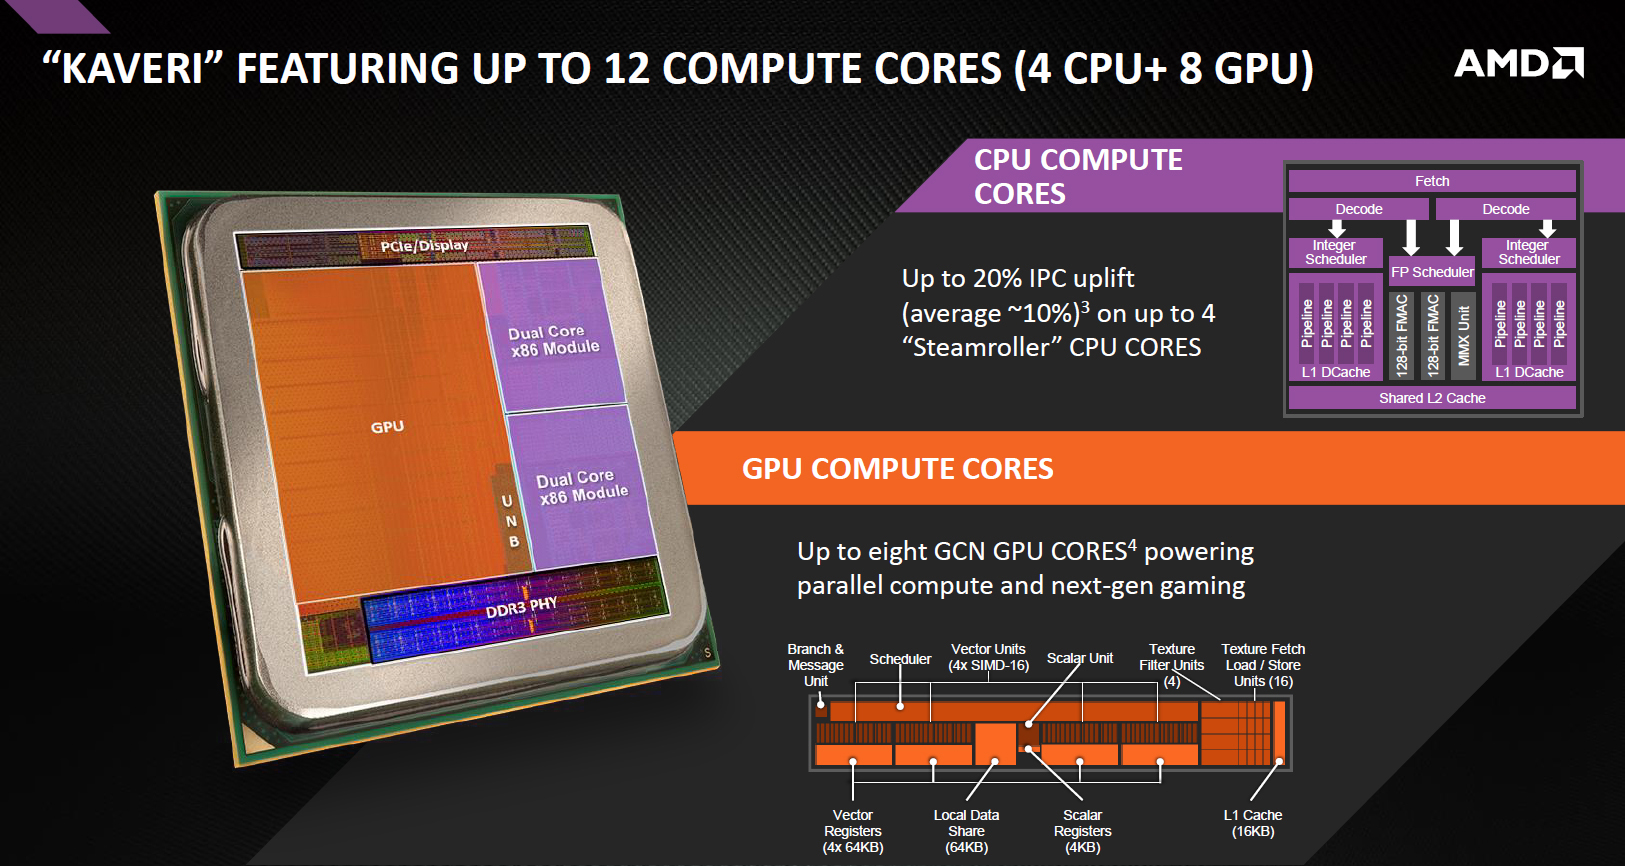 AMD A10-7850K APU